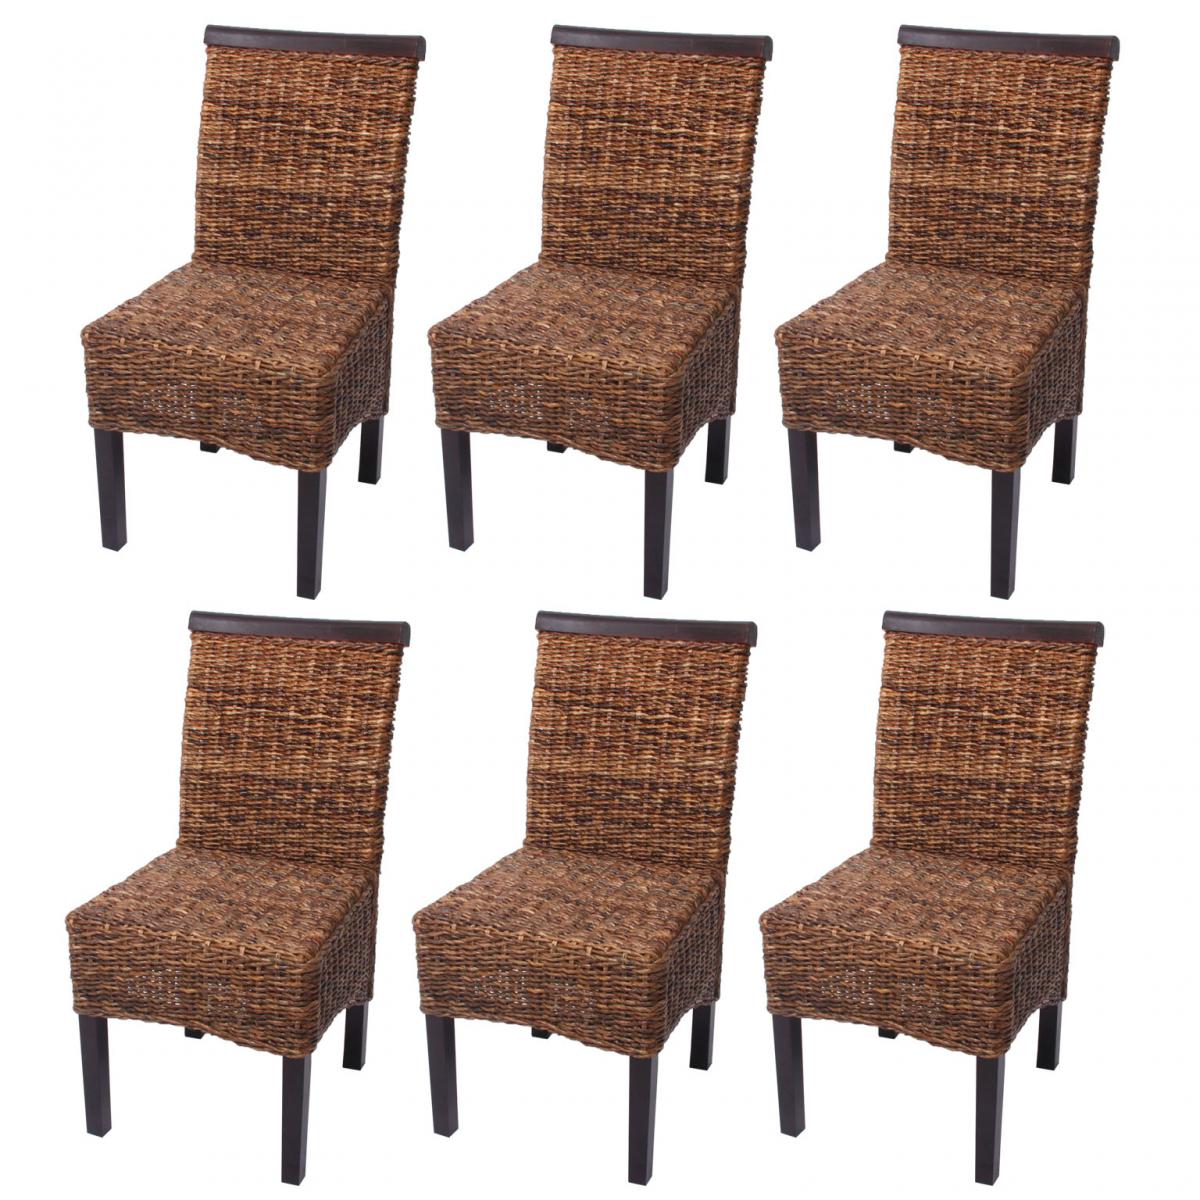 Mendler - Lot de 6 chaises M45, banane tressée, 47x54x93cn, pieds foncés - Chaises